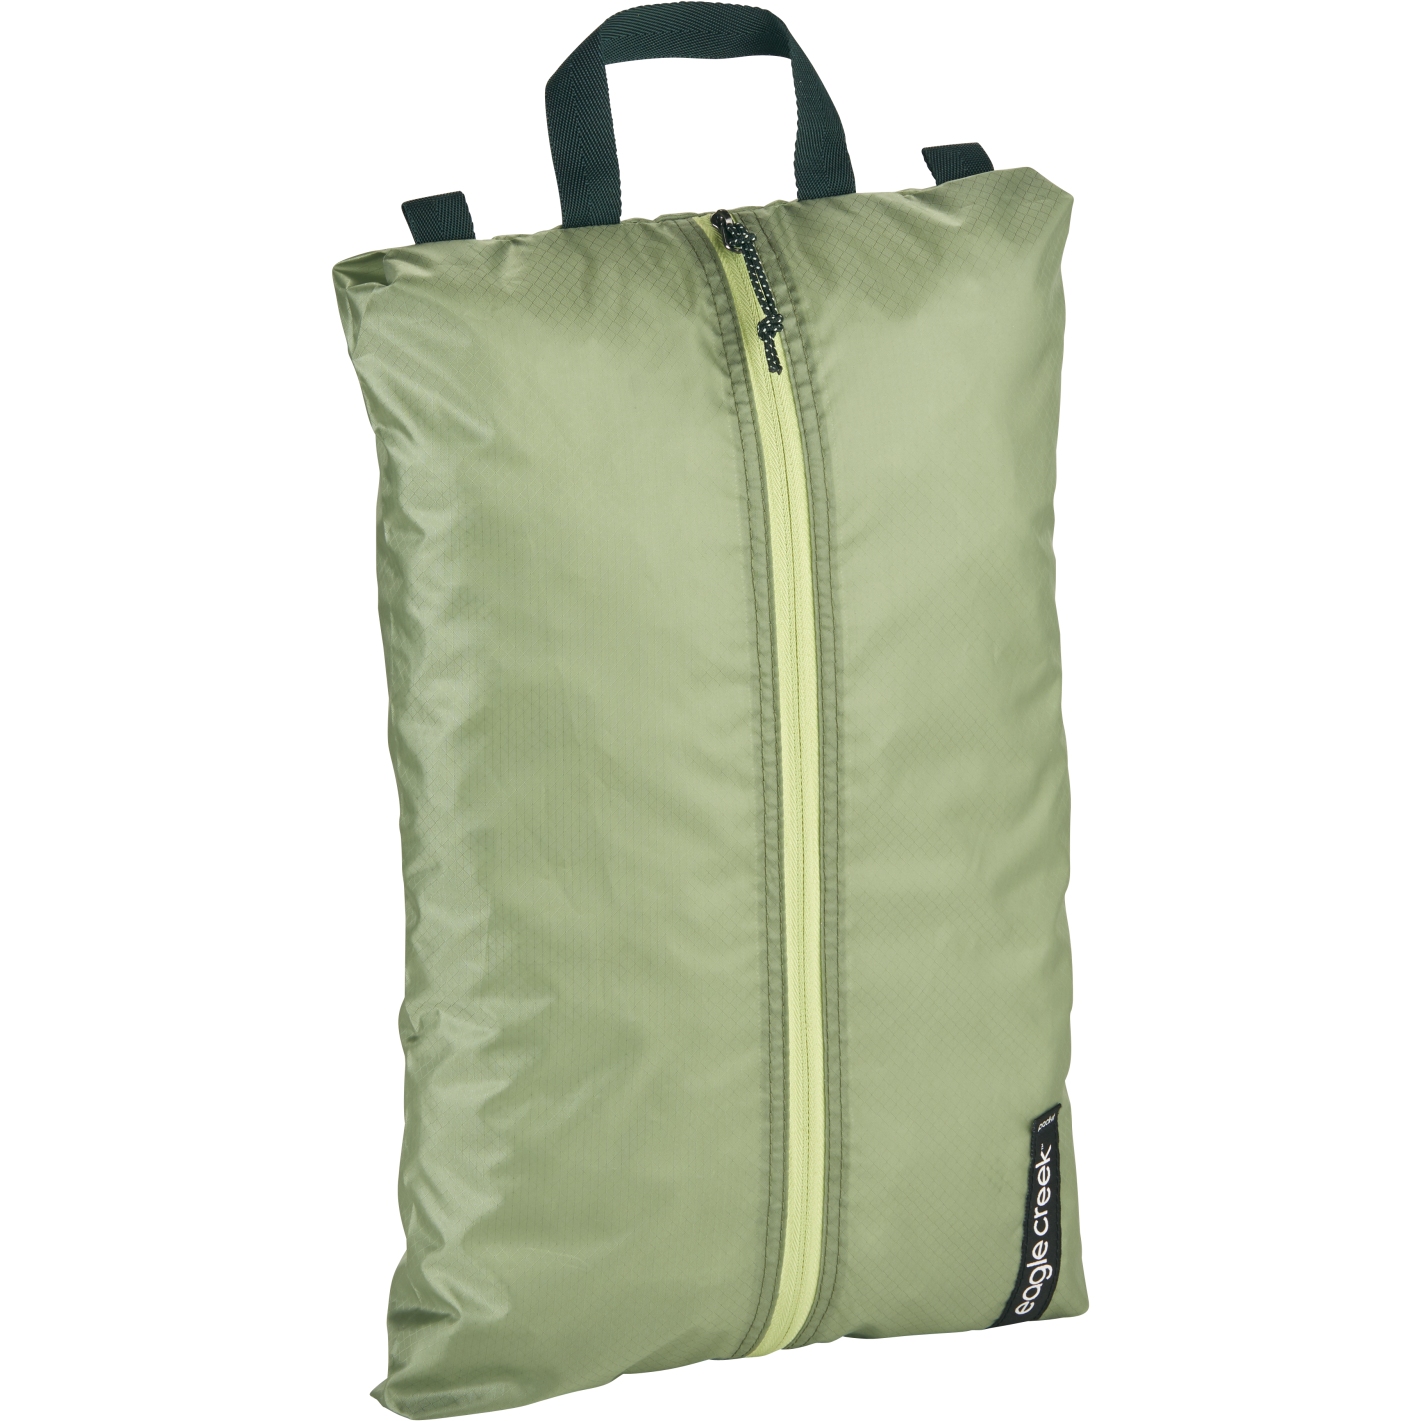 Produktbild von Eagle Creek Pack-It™ Isolate Shoe Sac - Schuhtasche - mossy green